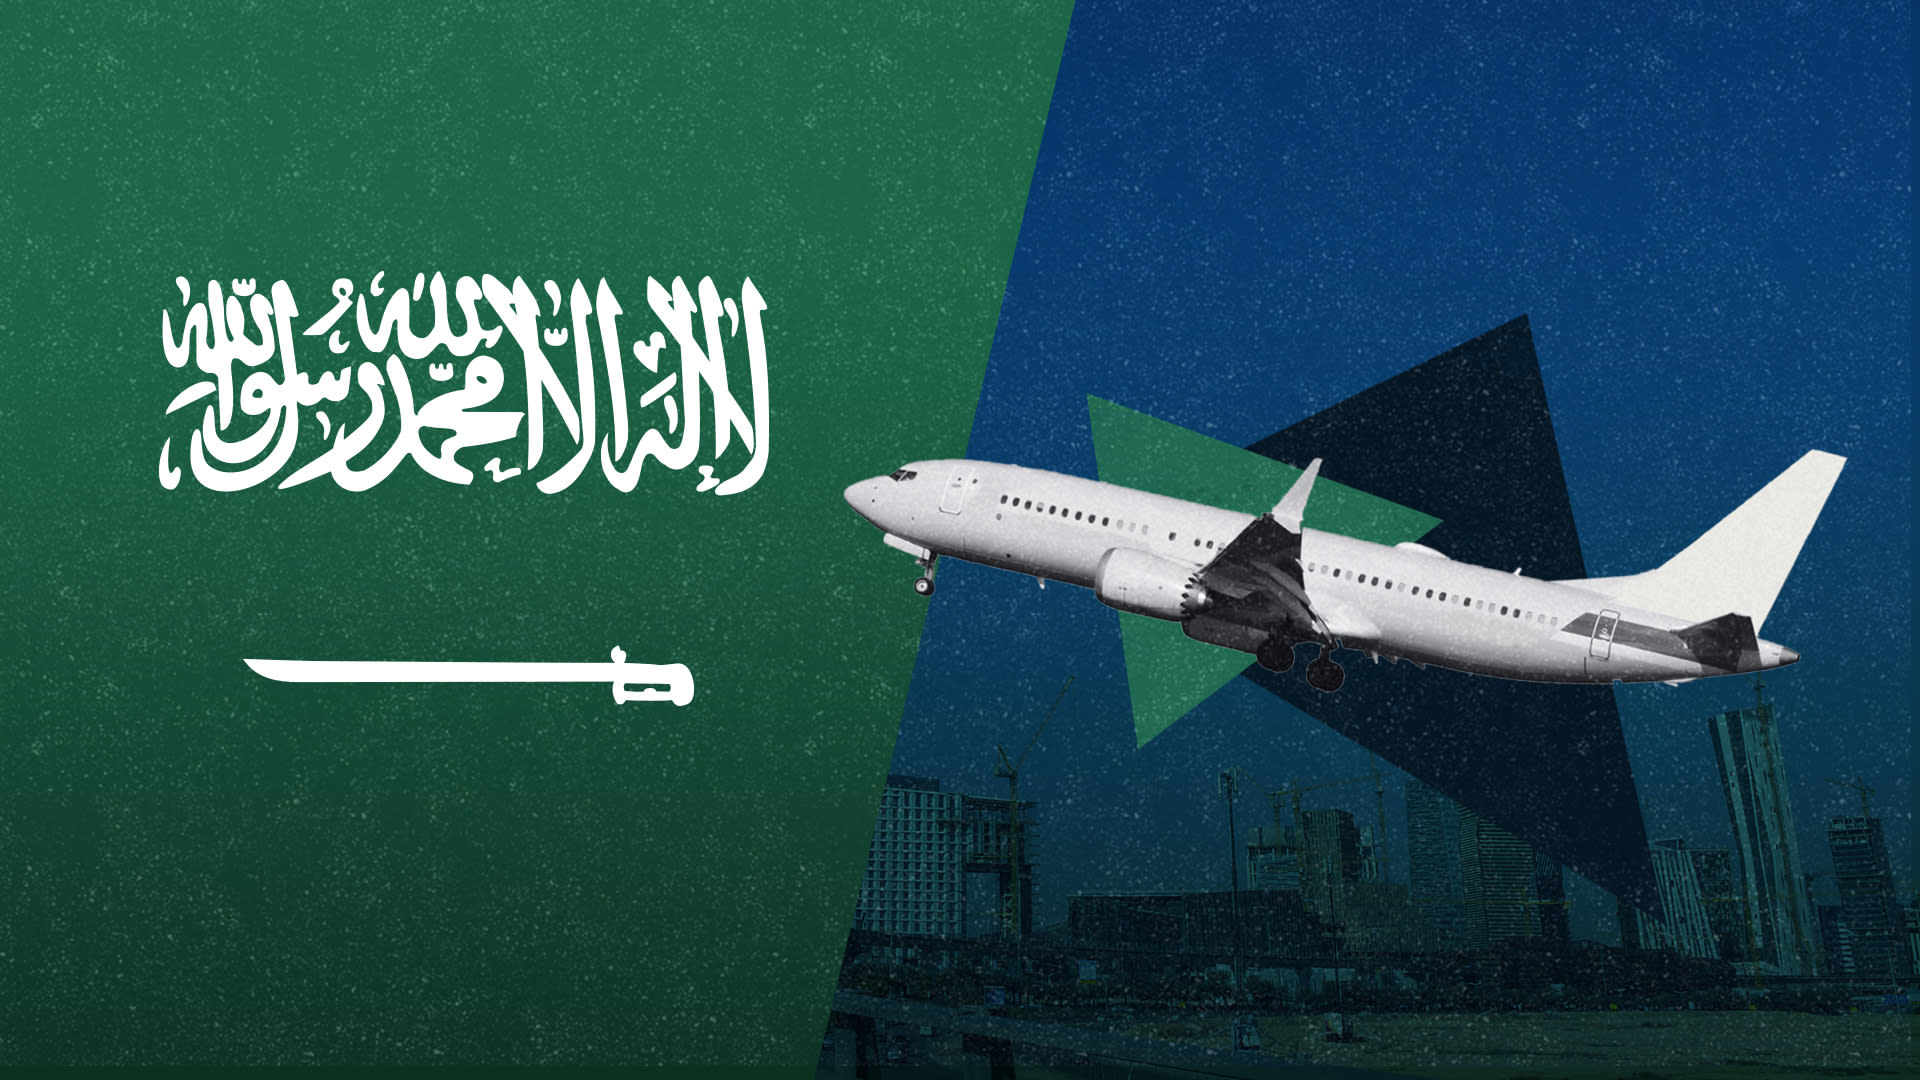 من فرص العمل بالسعودية إلى عوائد الموردين.. كيف سيلمس مشروع "طيران الرياض" الحياة بالمملكة؟